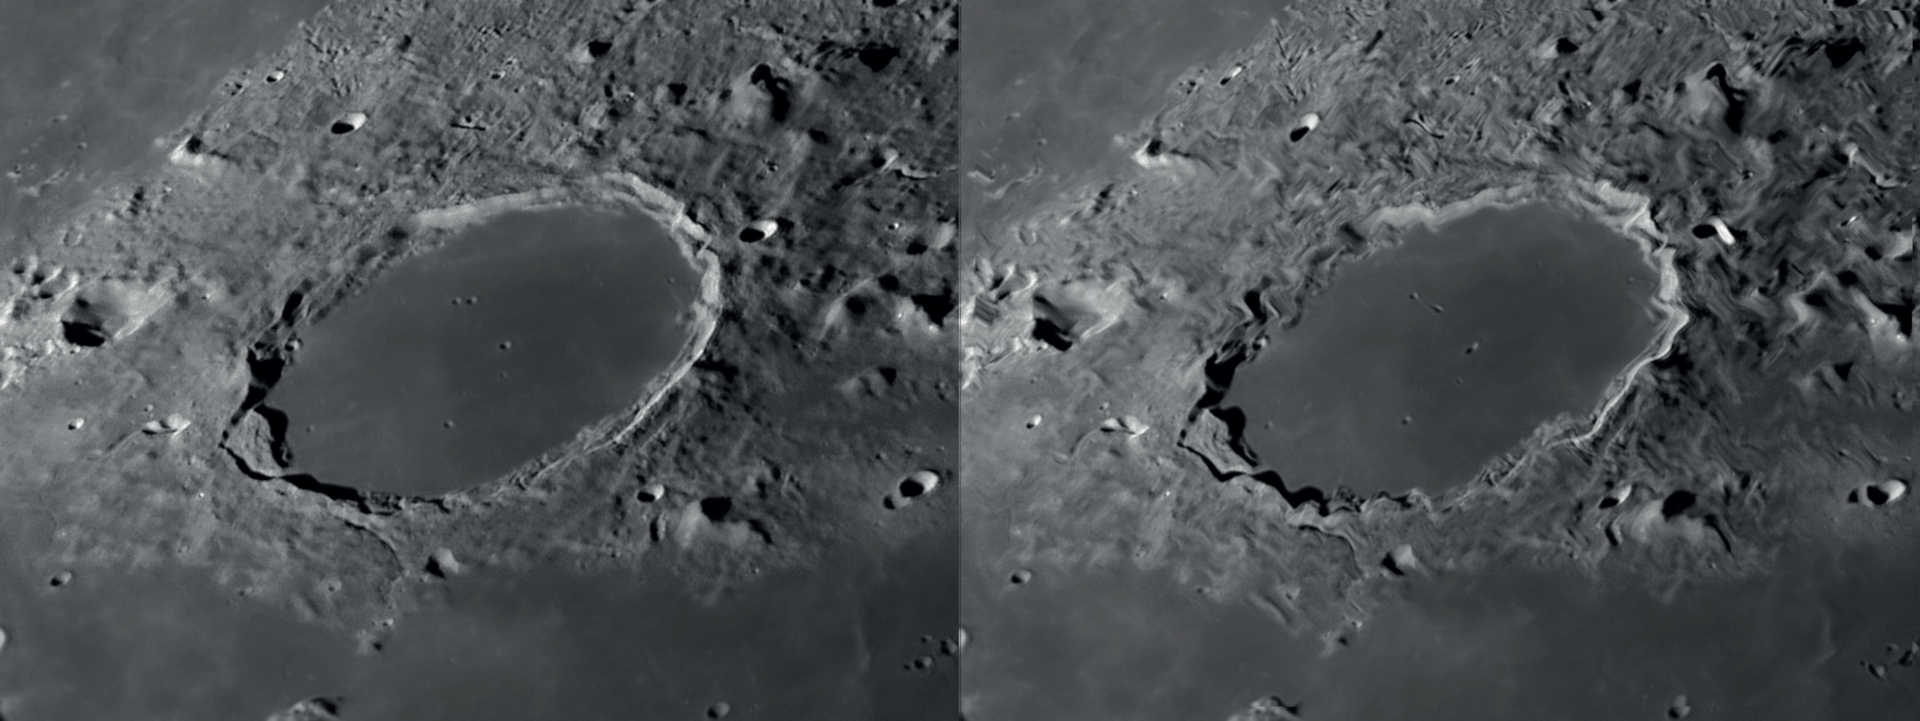 Se il seeing è buono il grado di riconoscibilità dei dettagli nell’osservazione lunare e planetaria è alto (sinistra). Movimenti d’aria lenti portano a una distorsione locale dell’immagine, mentre le altre zone restano nitide (destra). NASA/GSFC/Arizona State University/L. Spix